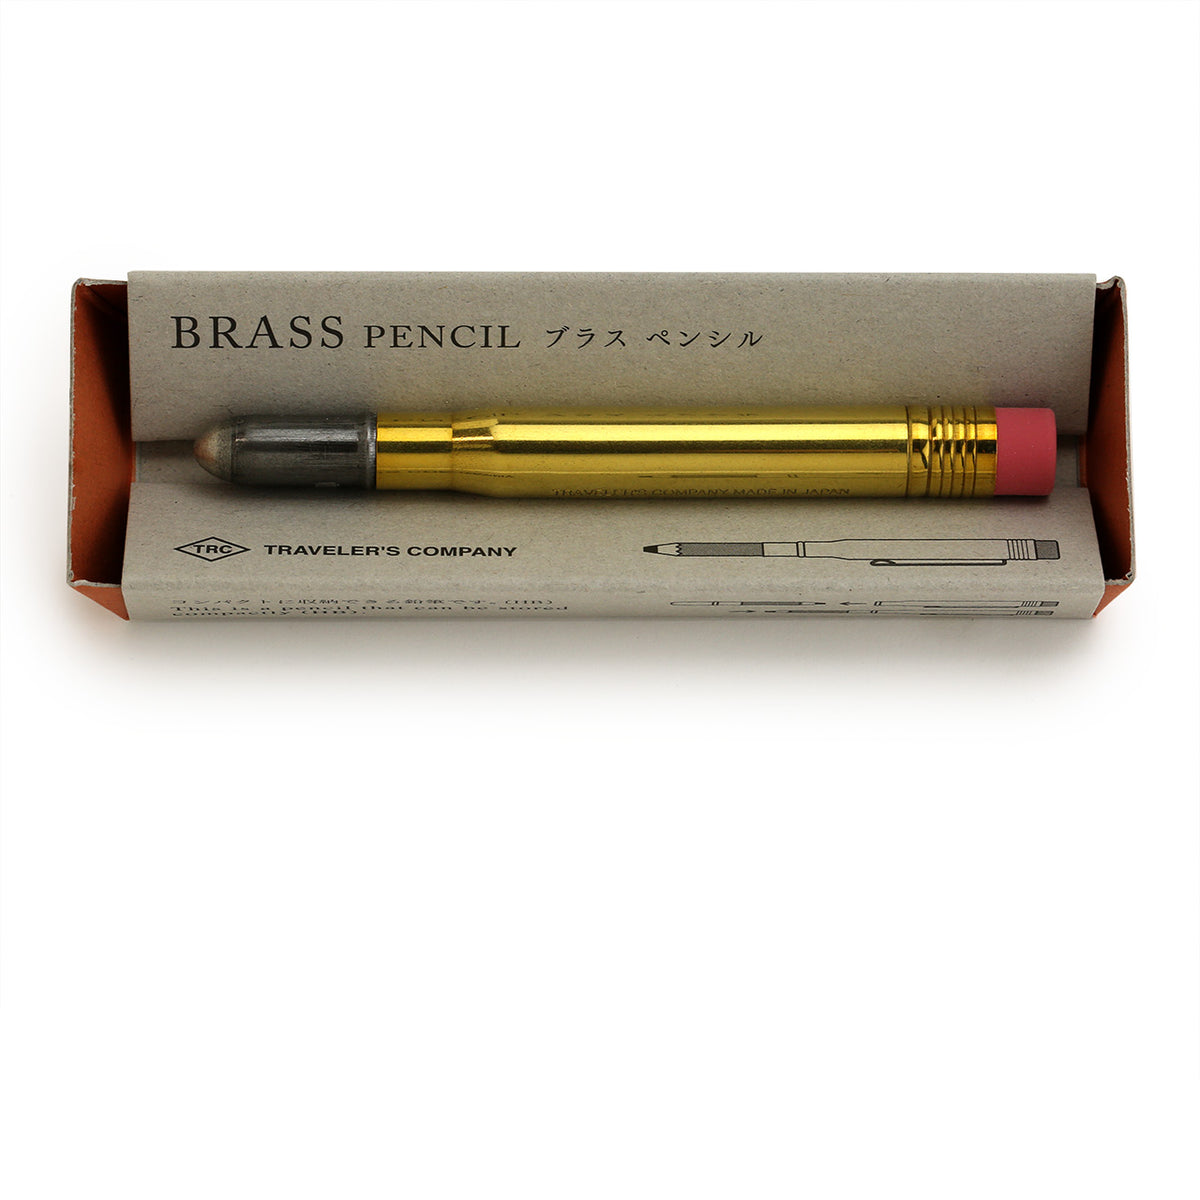 Brass pencil in its kraft package